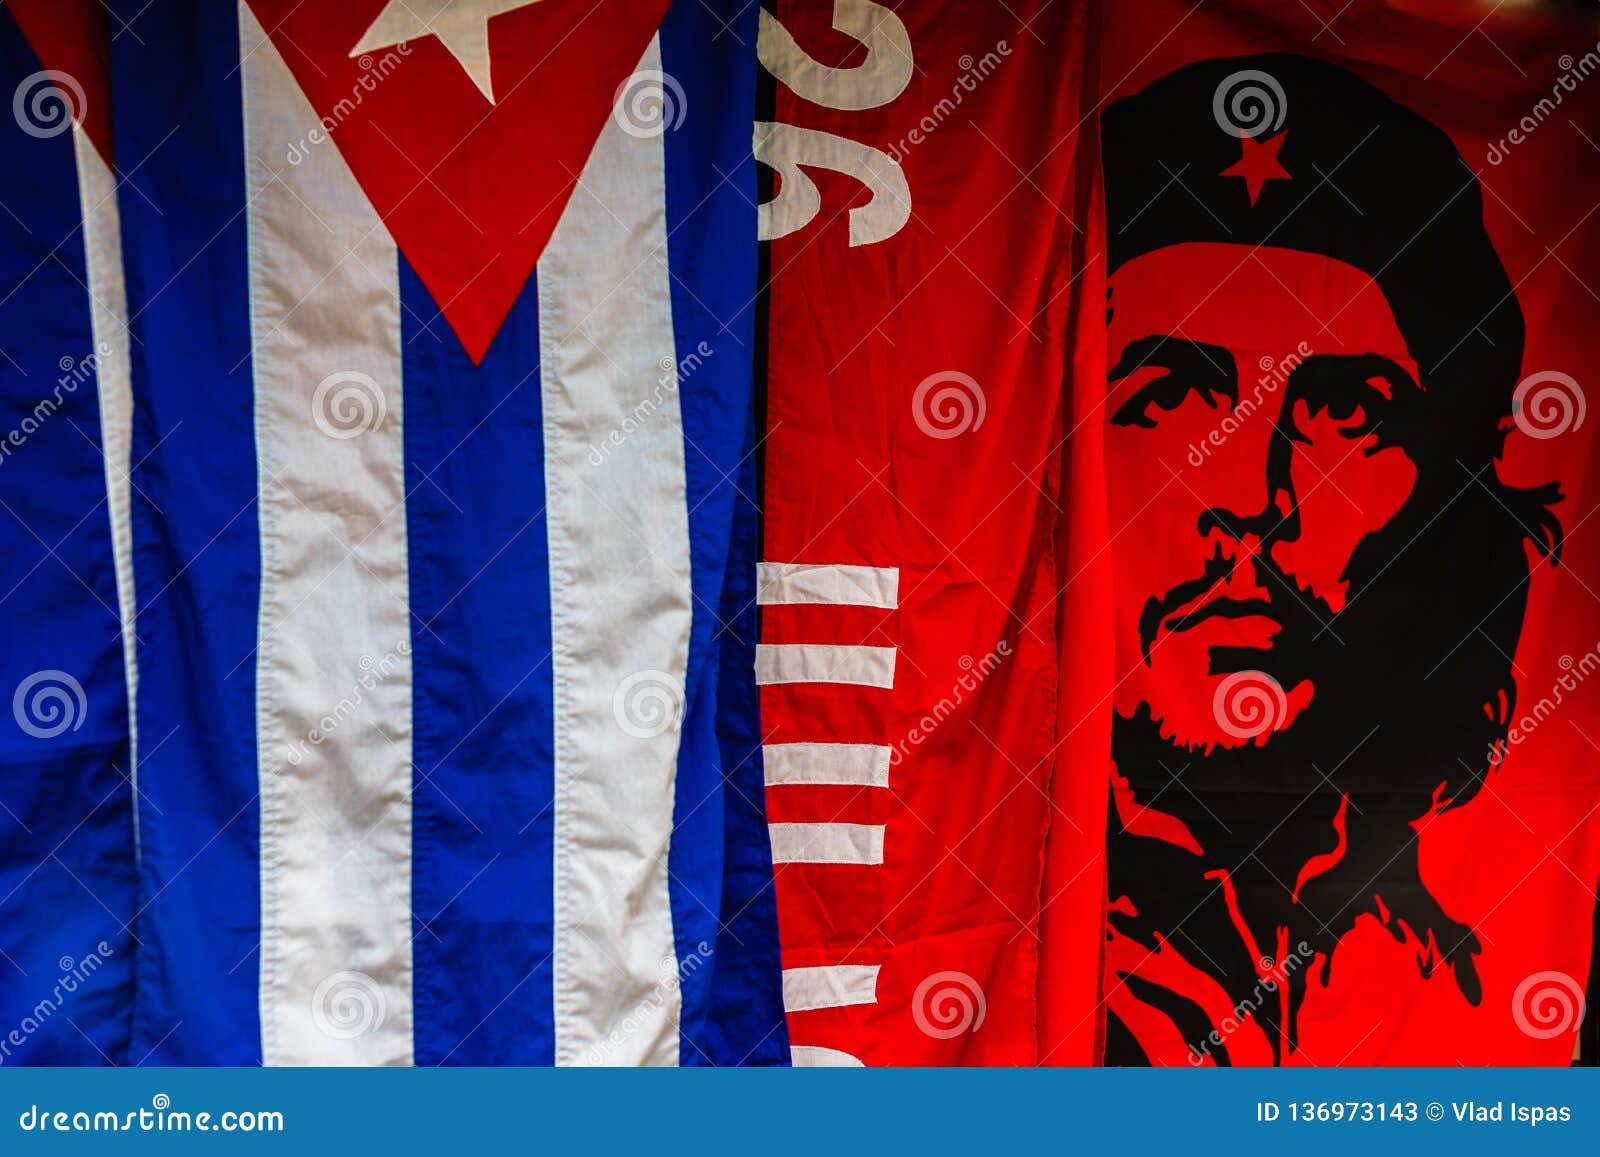 Cuba & Che Guevara Double Friendship Table Flag Set 